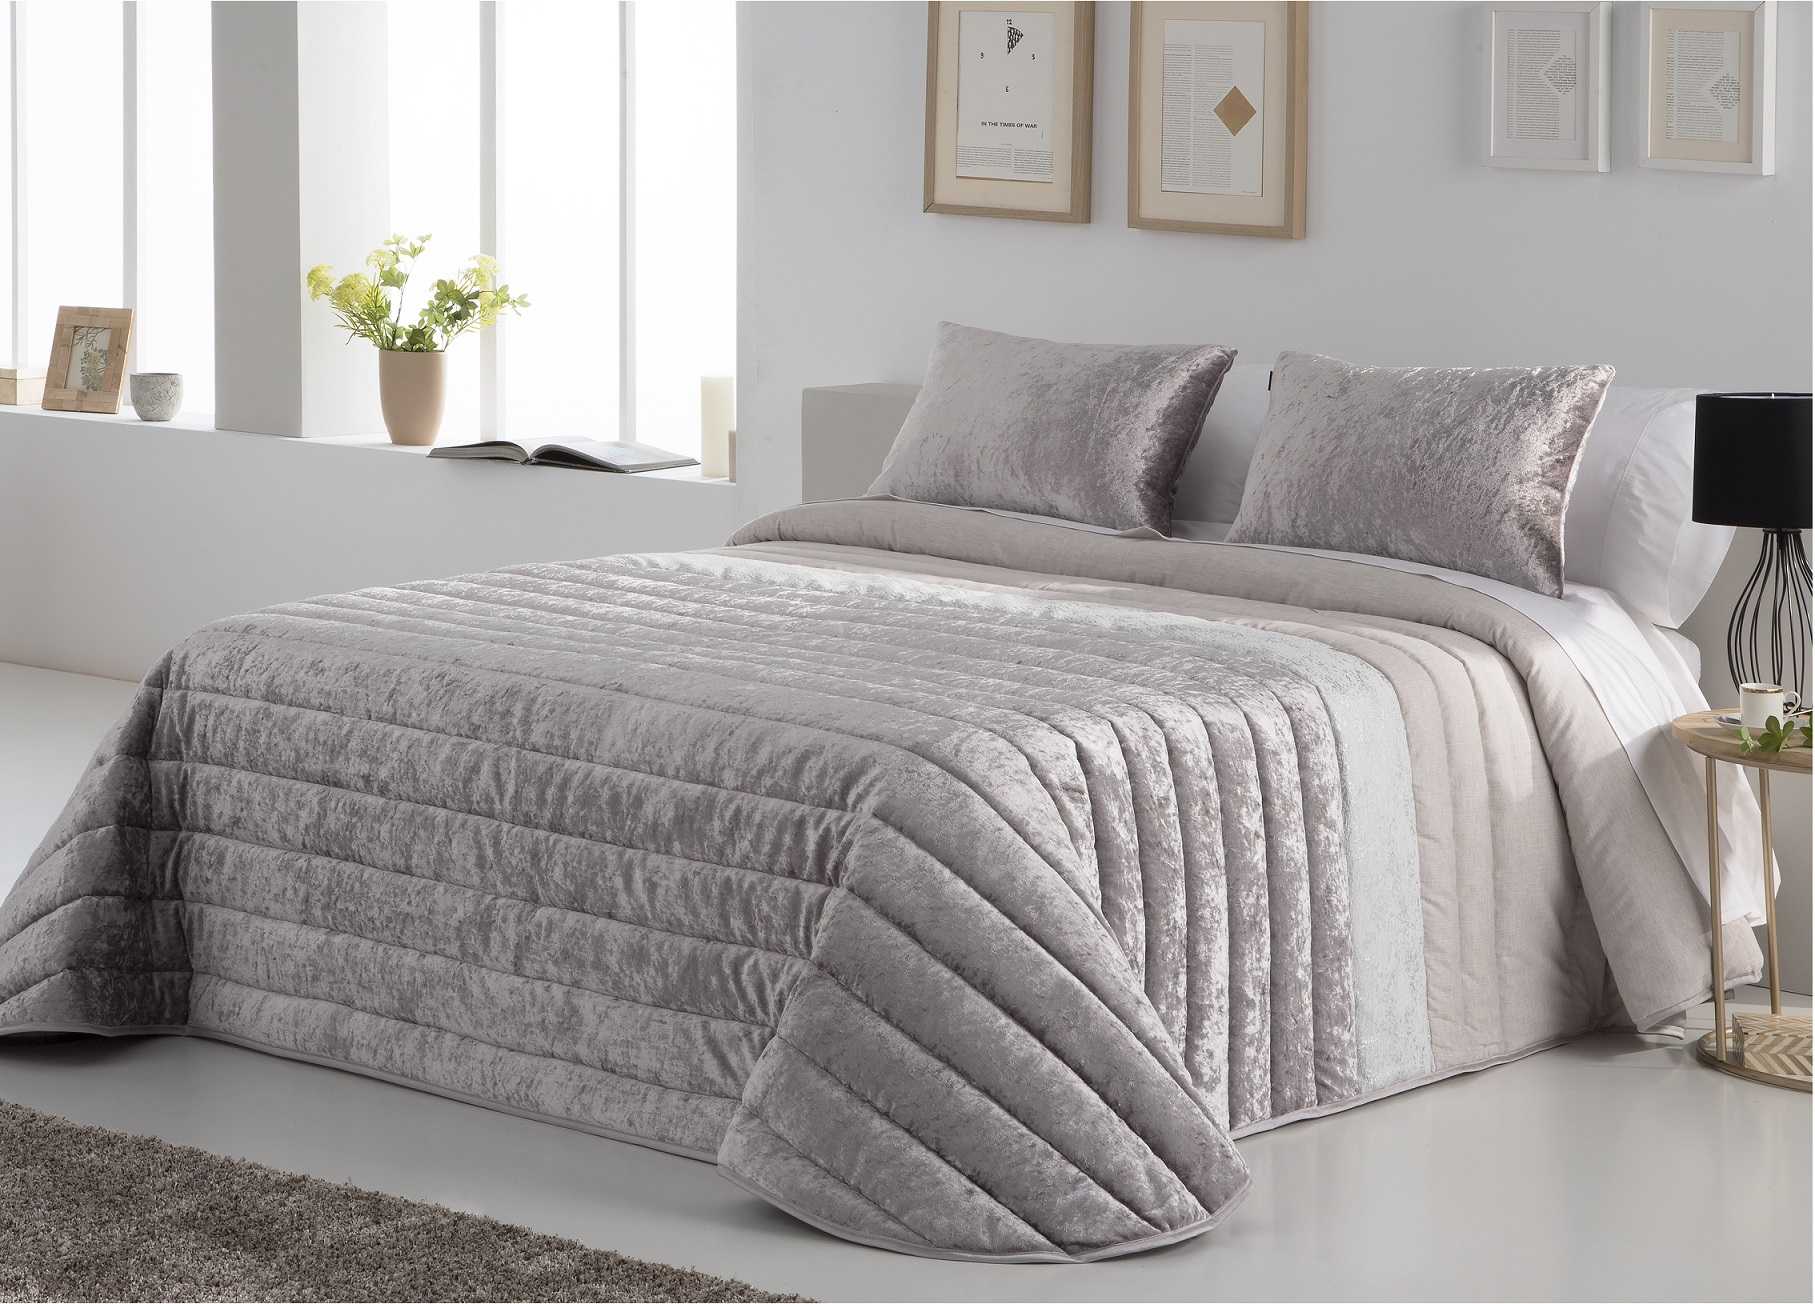 Не покупайте покрывало на кровать не узнав этого! 4 важнейших правила, которые обязательно нужно соблюдать при выборе текстиля в спальню!